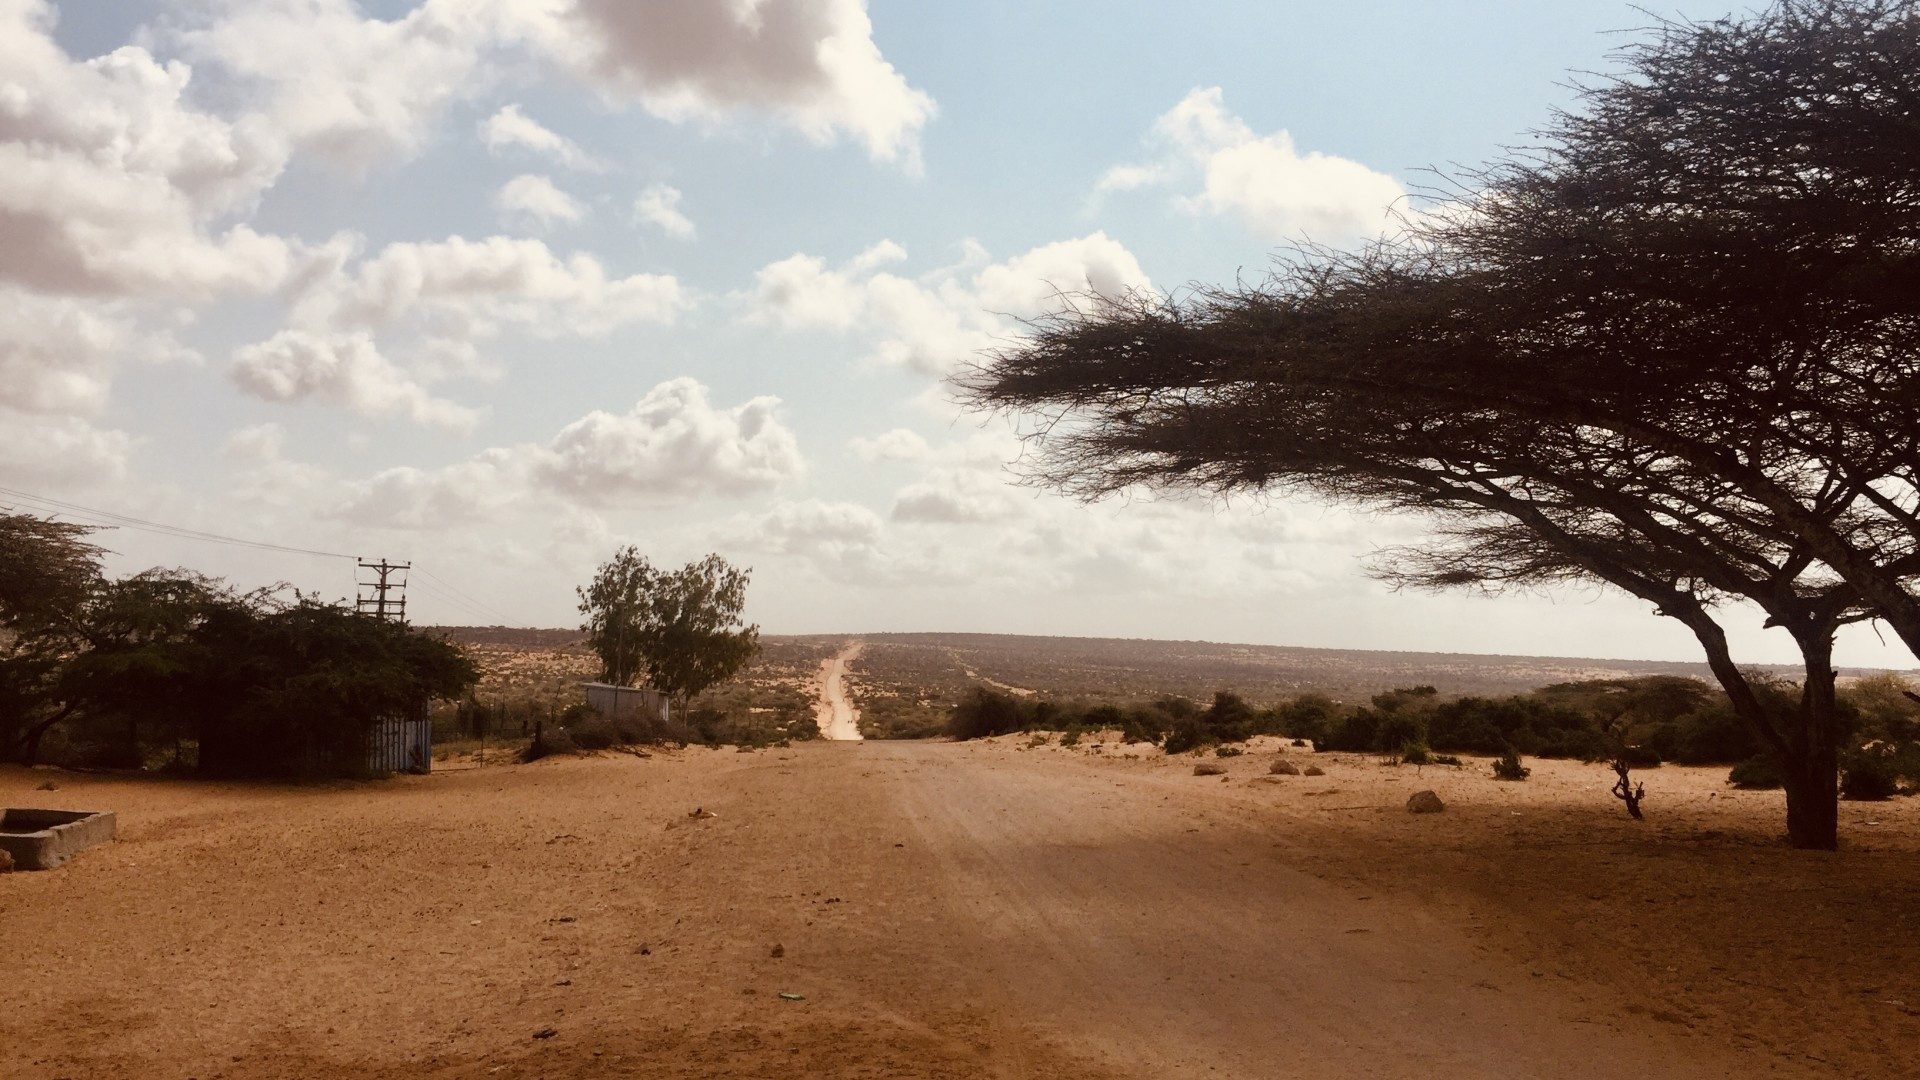 Somalia travels, Mogadishu field, Clouds wallpapers, 1920x1080 Full HD Desktop